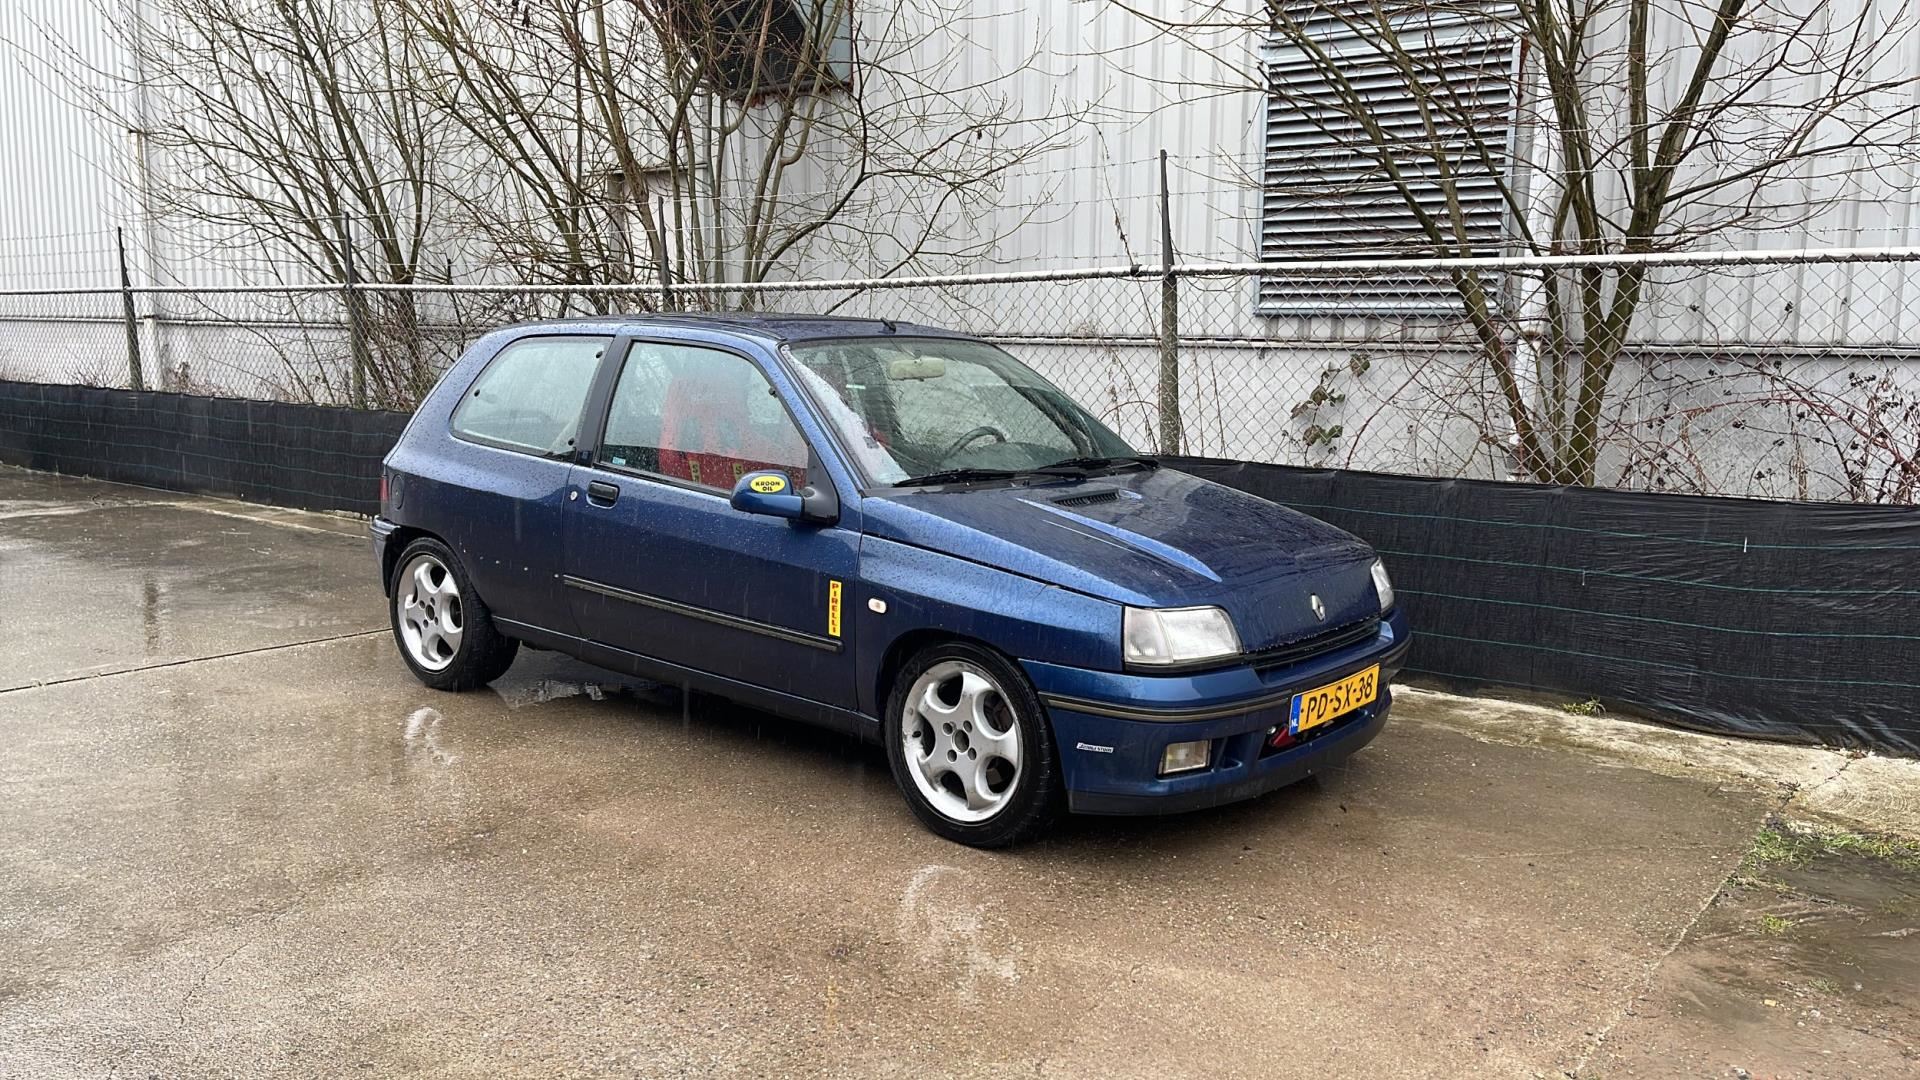 Dicteren voorjaar Republikeinse partij Renault Clio 1.8-16V - | 1991 | Schuifdak | Trackday met rolkooi en slicks  Benzine uit 1991 - www.autohandelhulst.nl